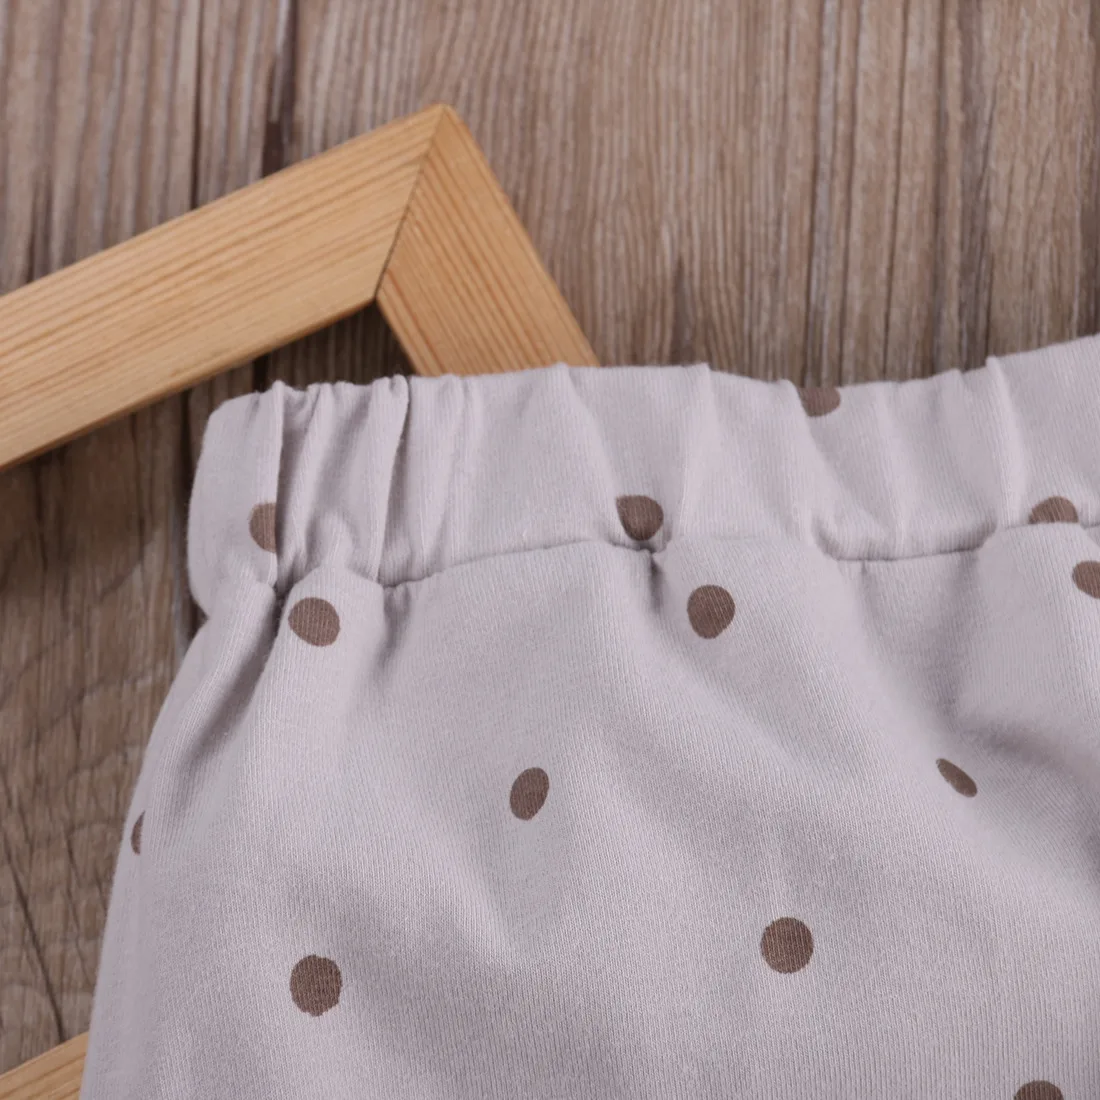 Puccoco/штаны-шаровары для новорожденных мальчиков и девочек с рисунком лисы; брюки для детей 0-24 месяцев; новая модная одежда